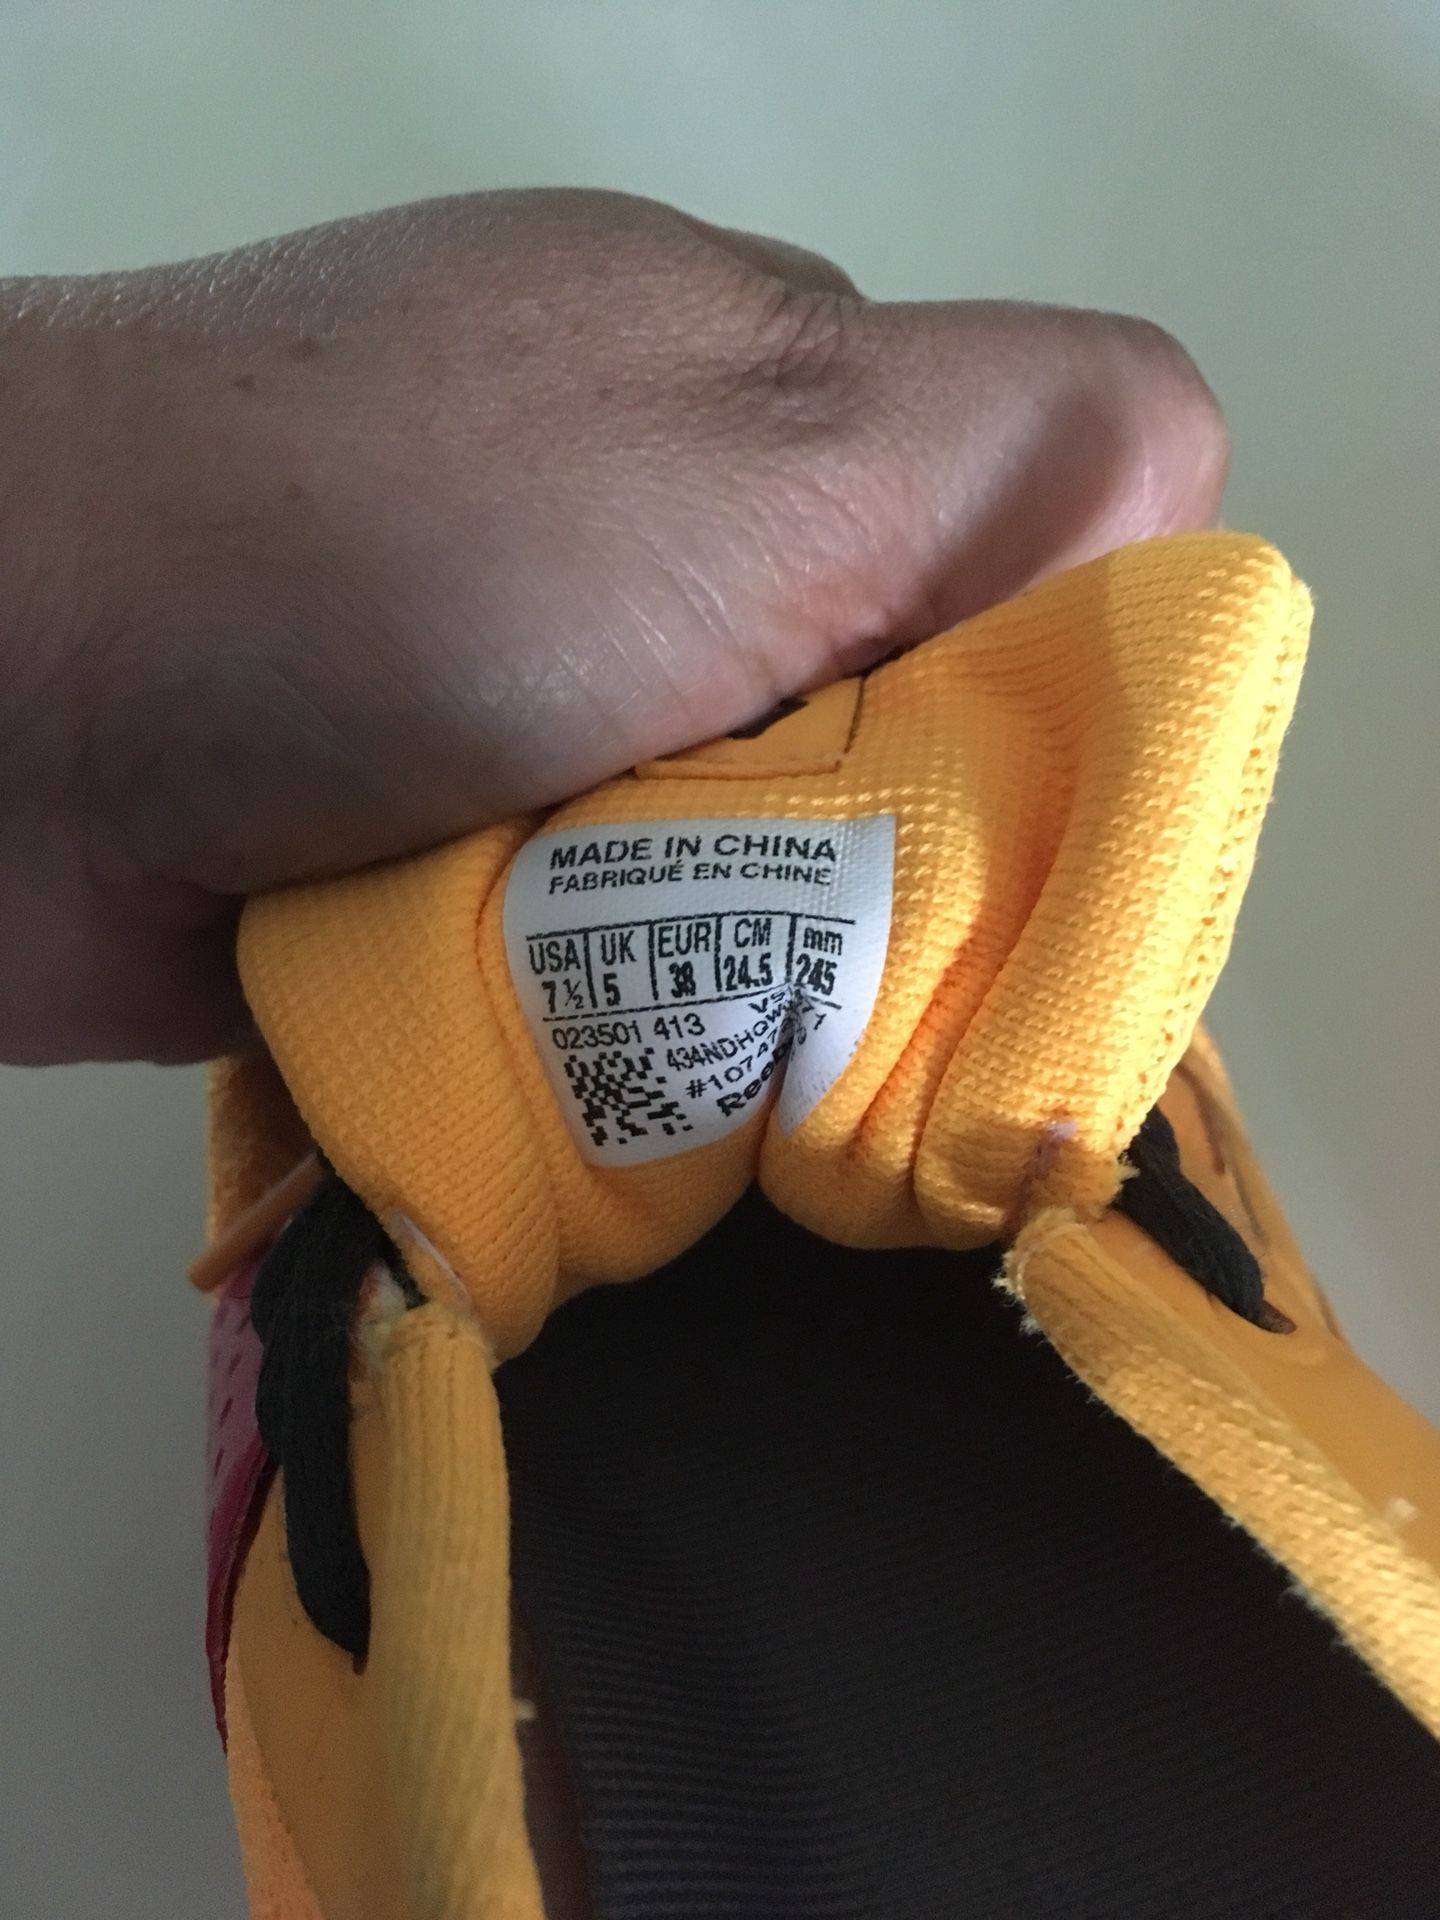 Reebok tennis shoes size 71/2 orange color